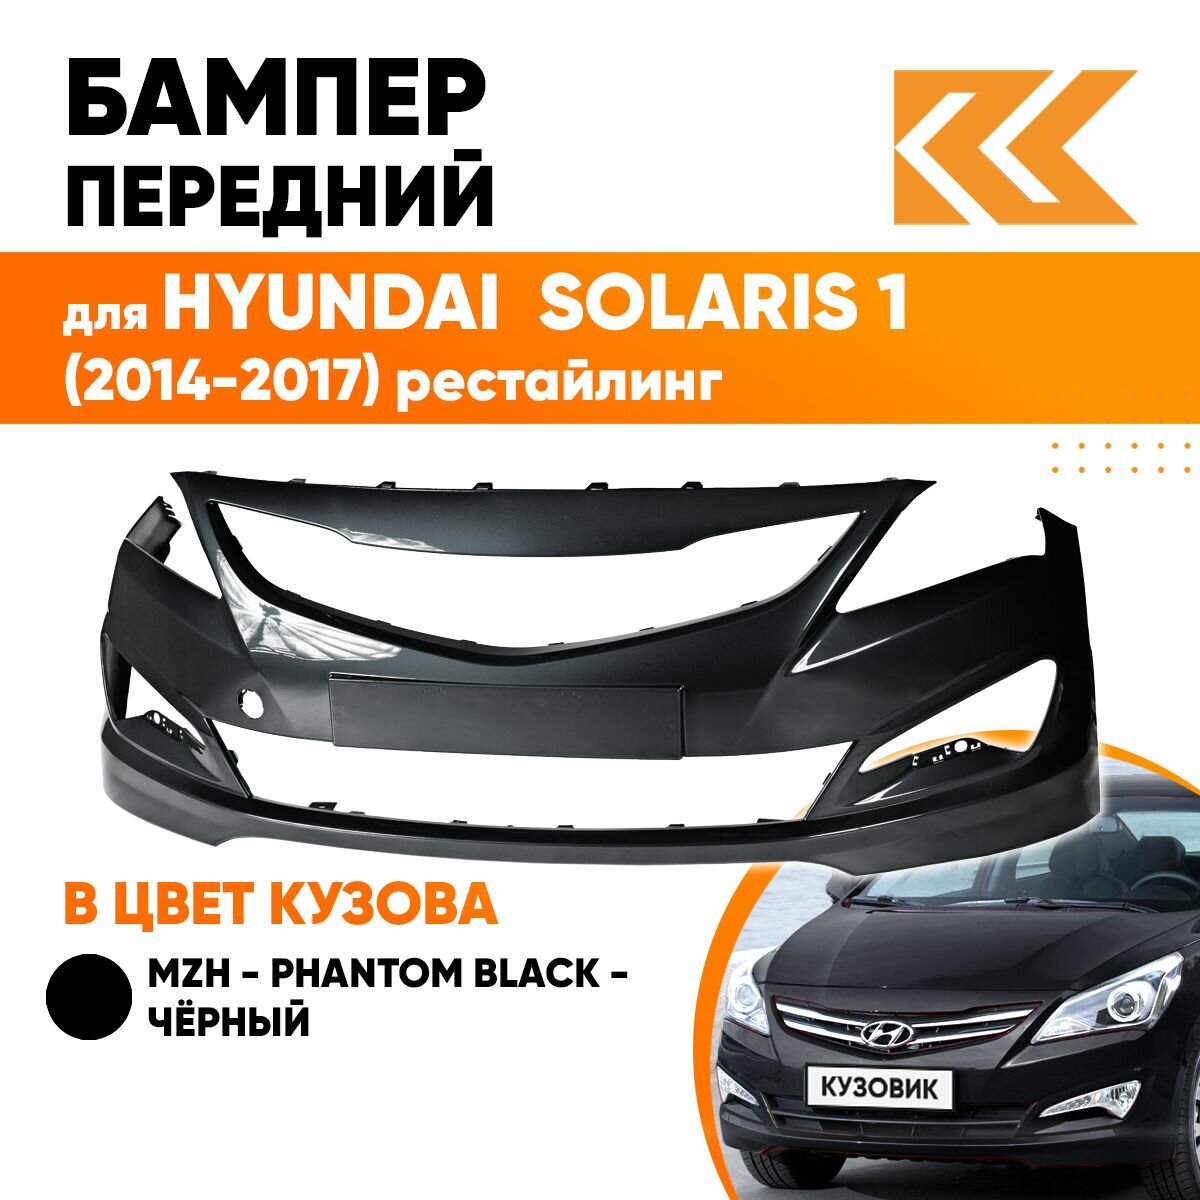 Бампер передний в цвет кузова для Хендай Солярис Hyundai Solaris 1 (2014-2017) рестайлинг MZH -Phantom Black-Черный